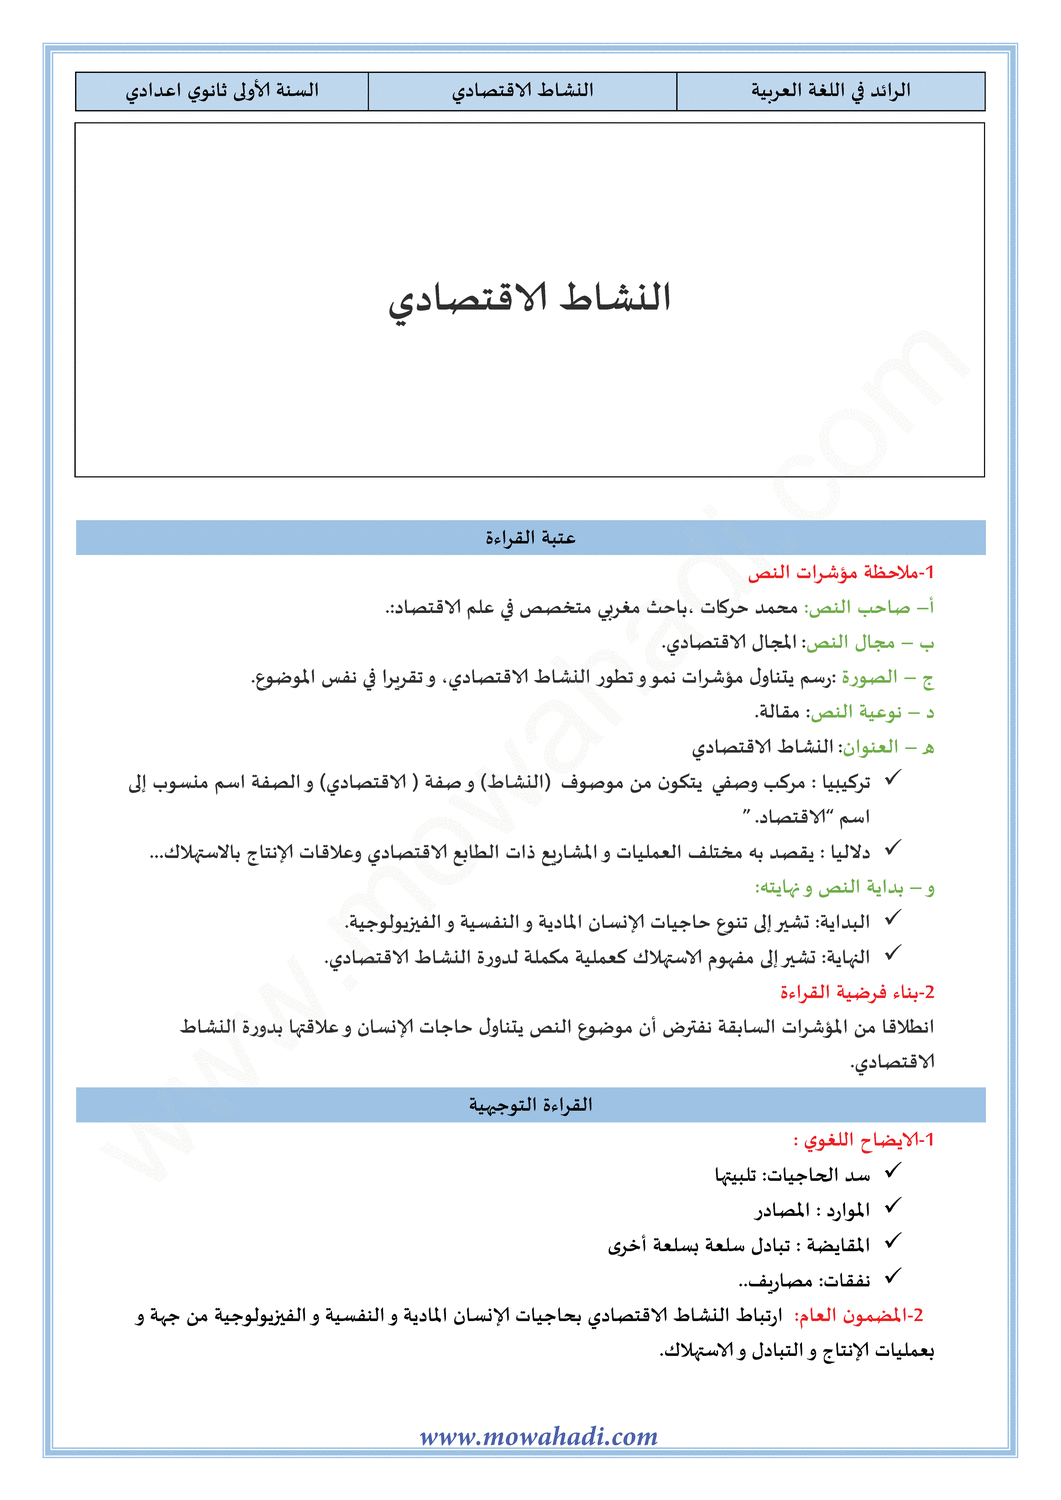 تحضير النص القرائي النشاط الاقتصادي للسنة الأولى اعدادي في مادة اللغة العربية